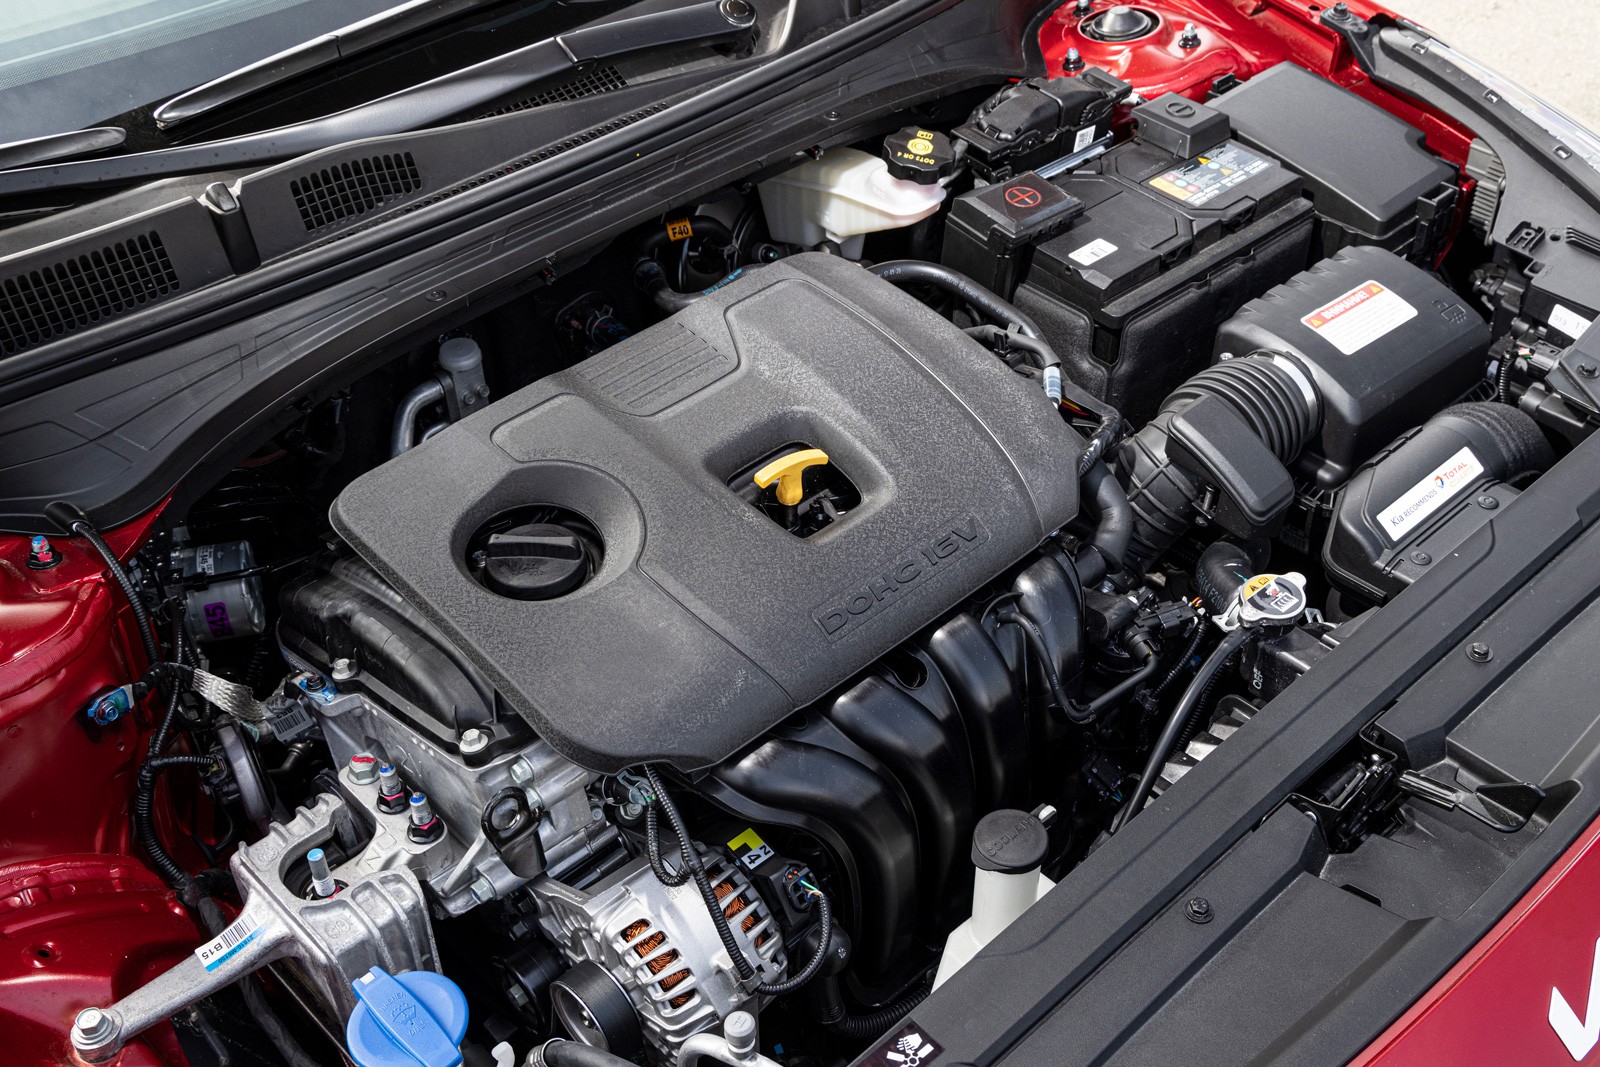 Киа Церато 4 поколения 2018/2019 года в новом кузове, технические характеристики, комплектации, цены, тест драйв, отзывы